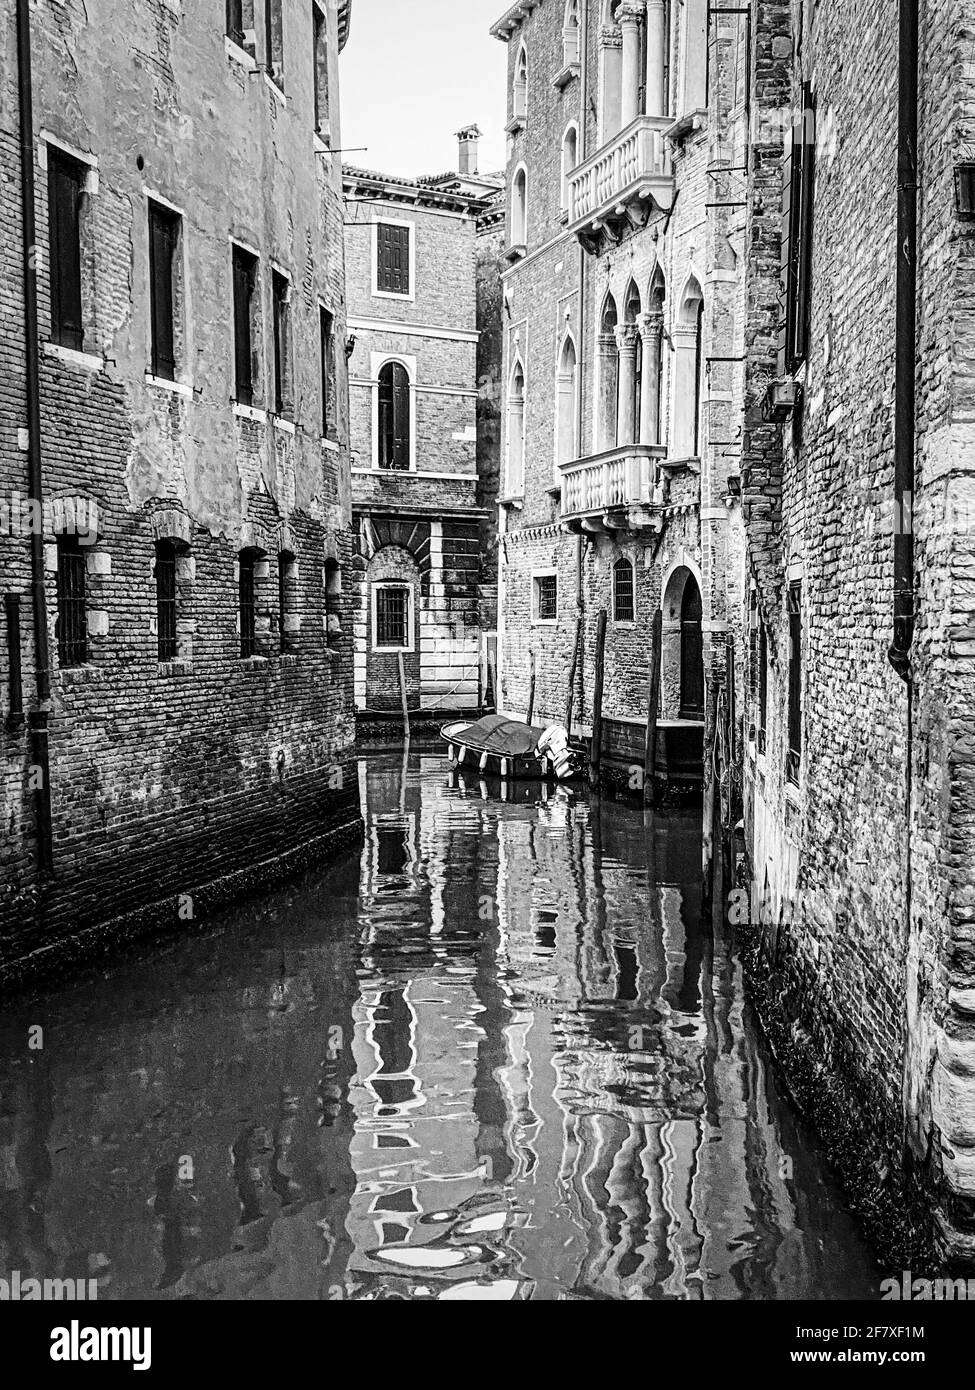 Noir et blanc de belles réflexions d'eau dans le petit canal, Venise, Italie Banque D'Images